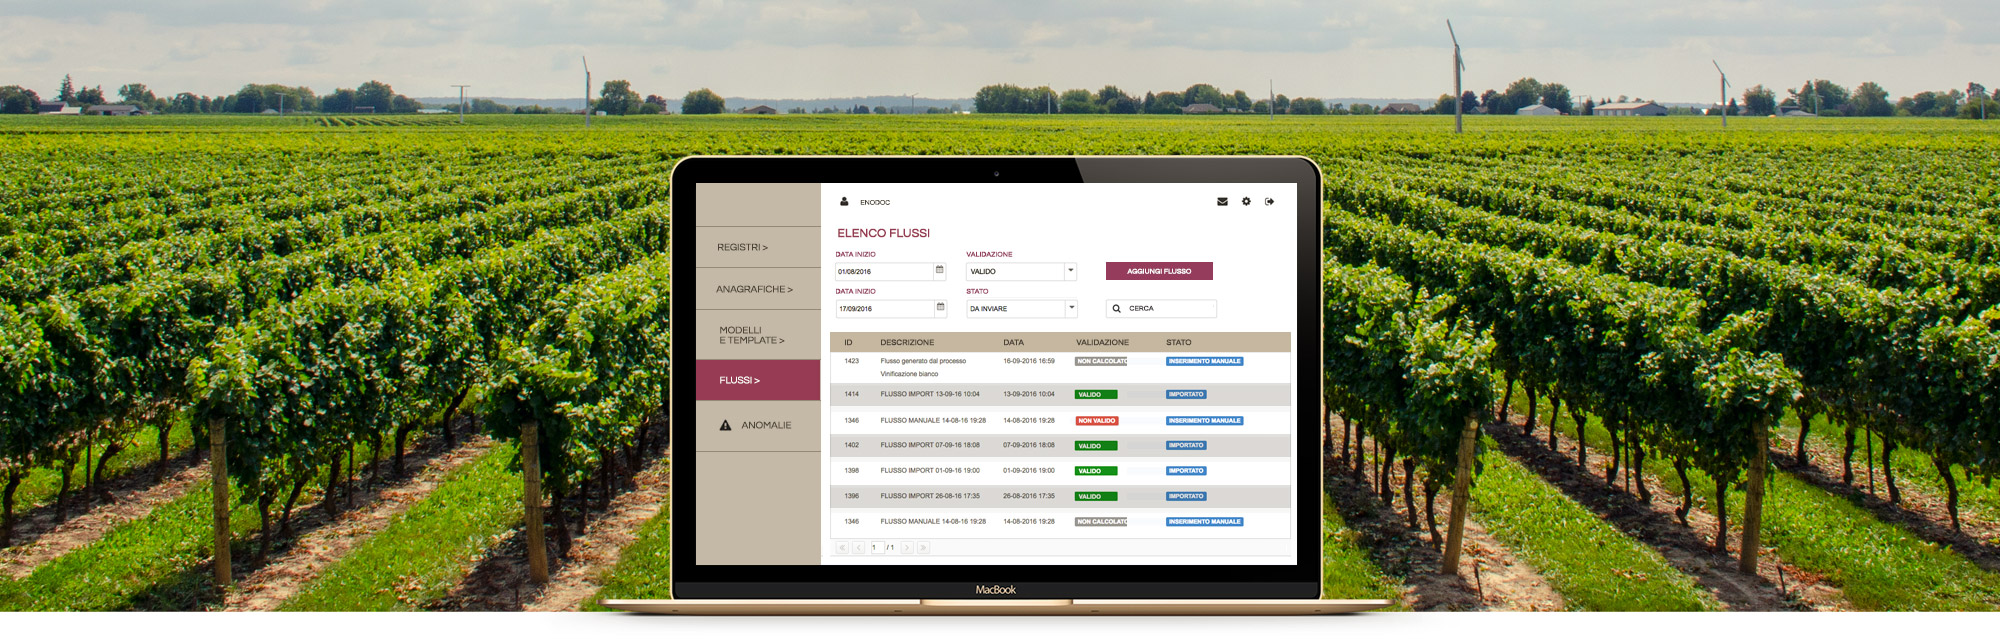 Dematerializzazione registri vitivinicoli: prova il software ENODOC